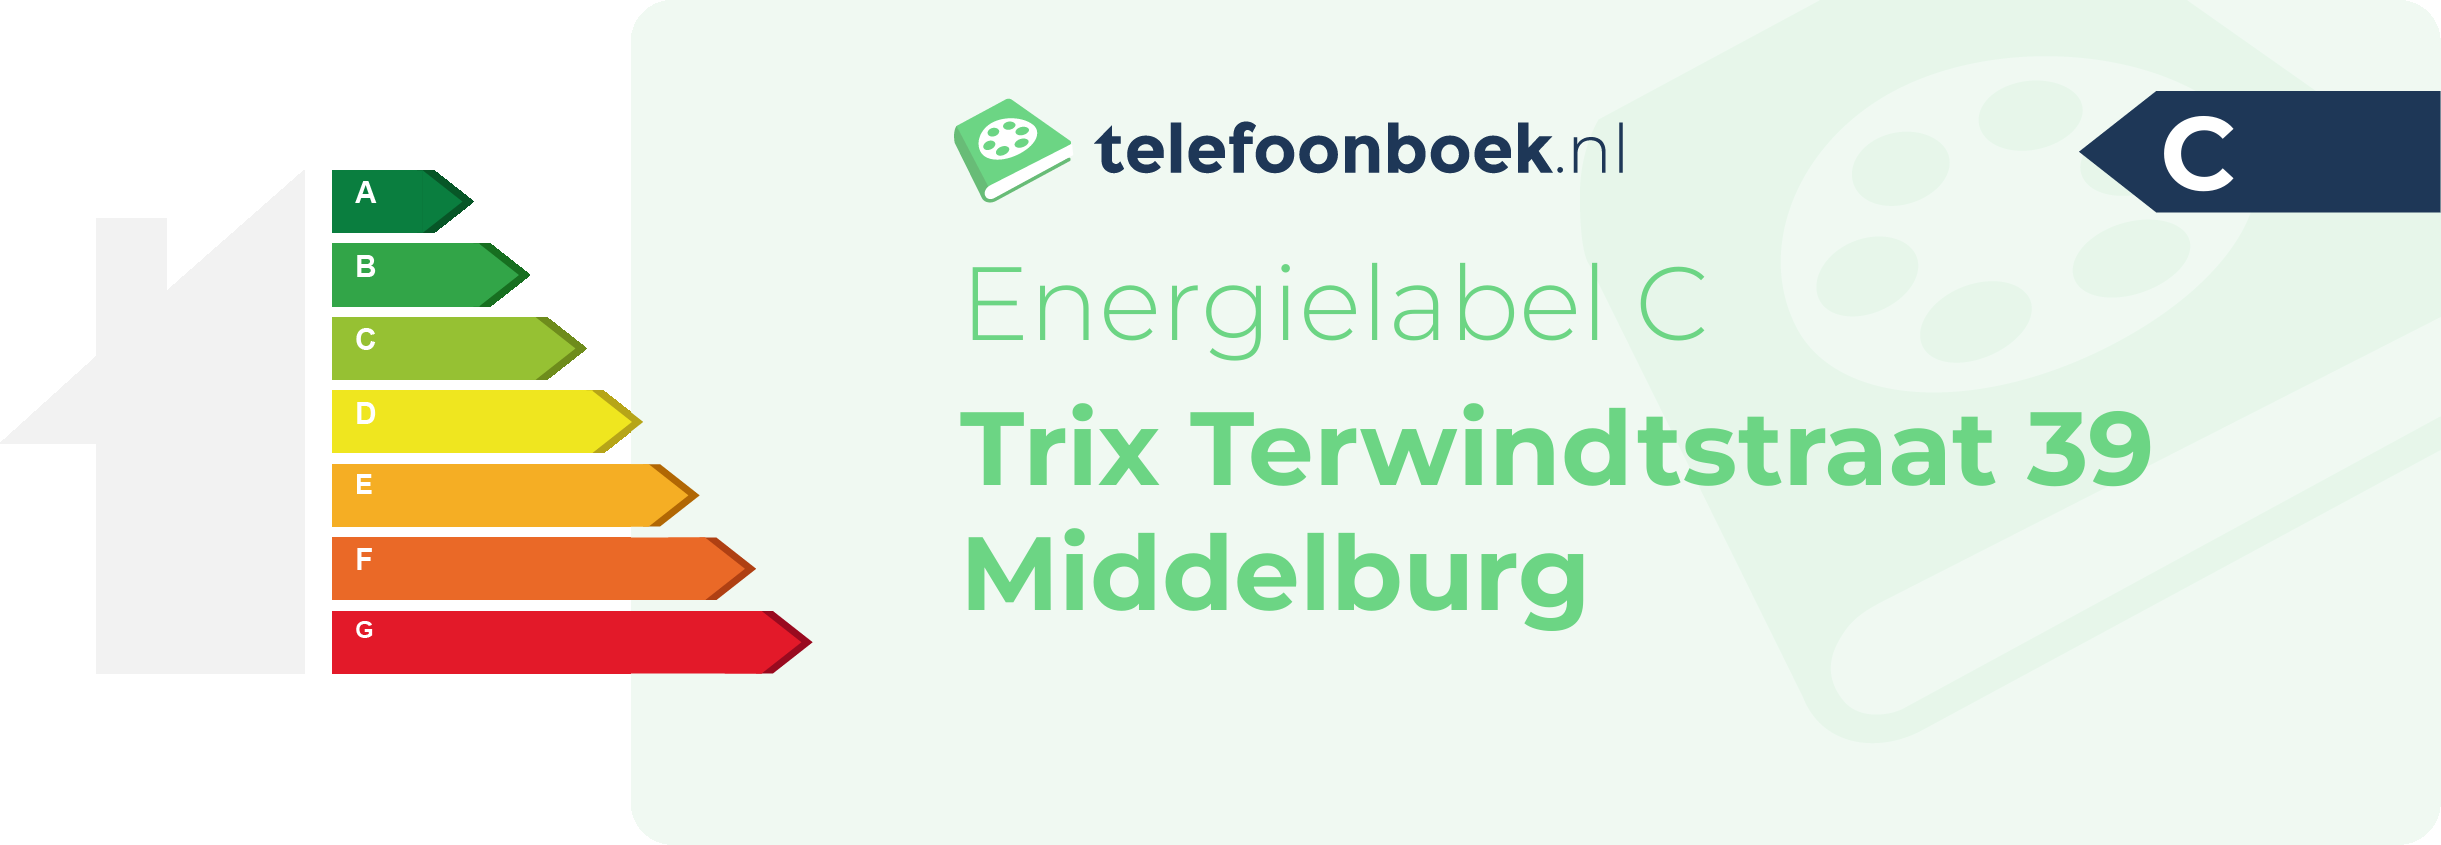 Energielabel Trix Terwindtstraat 39 Middelburg